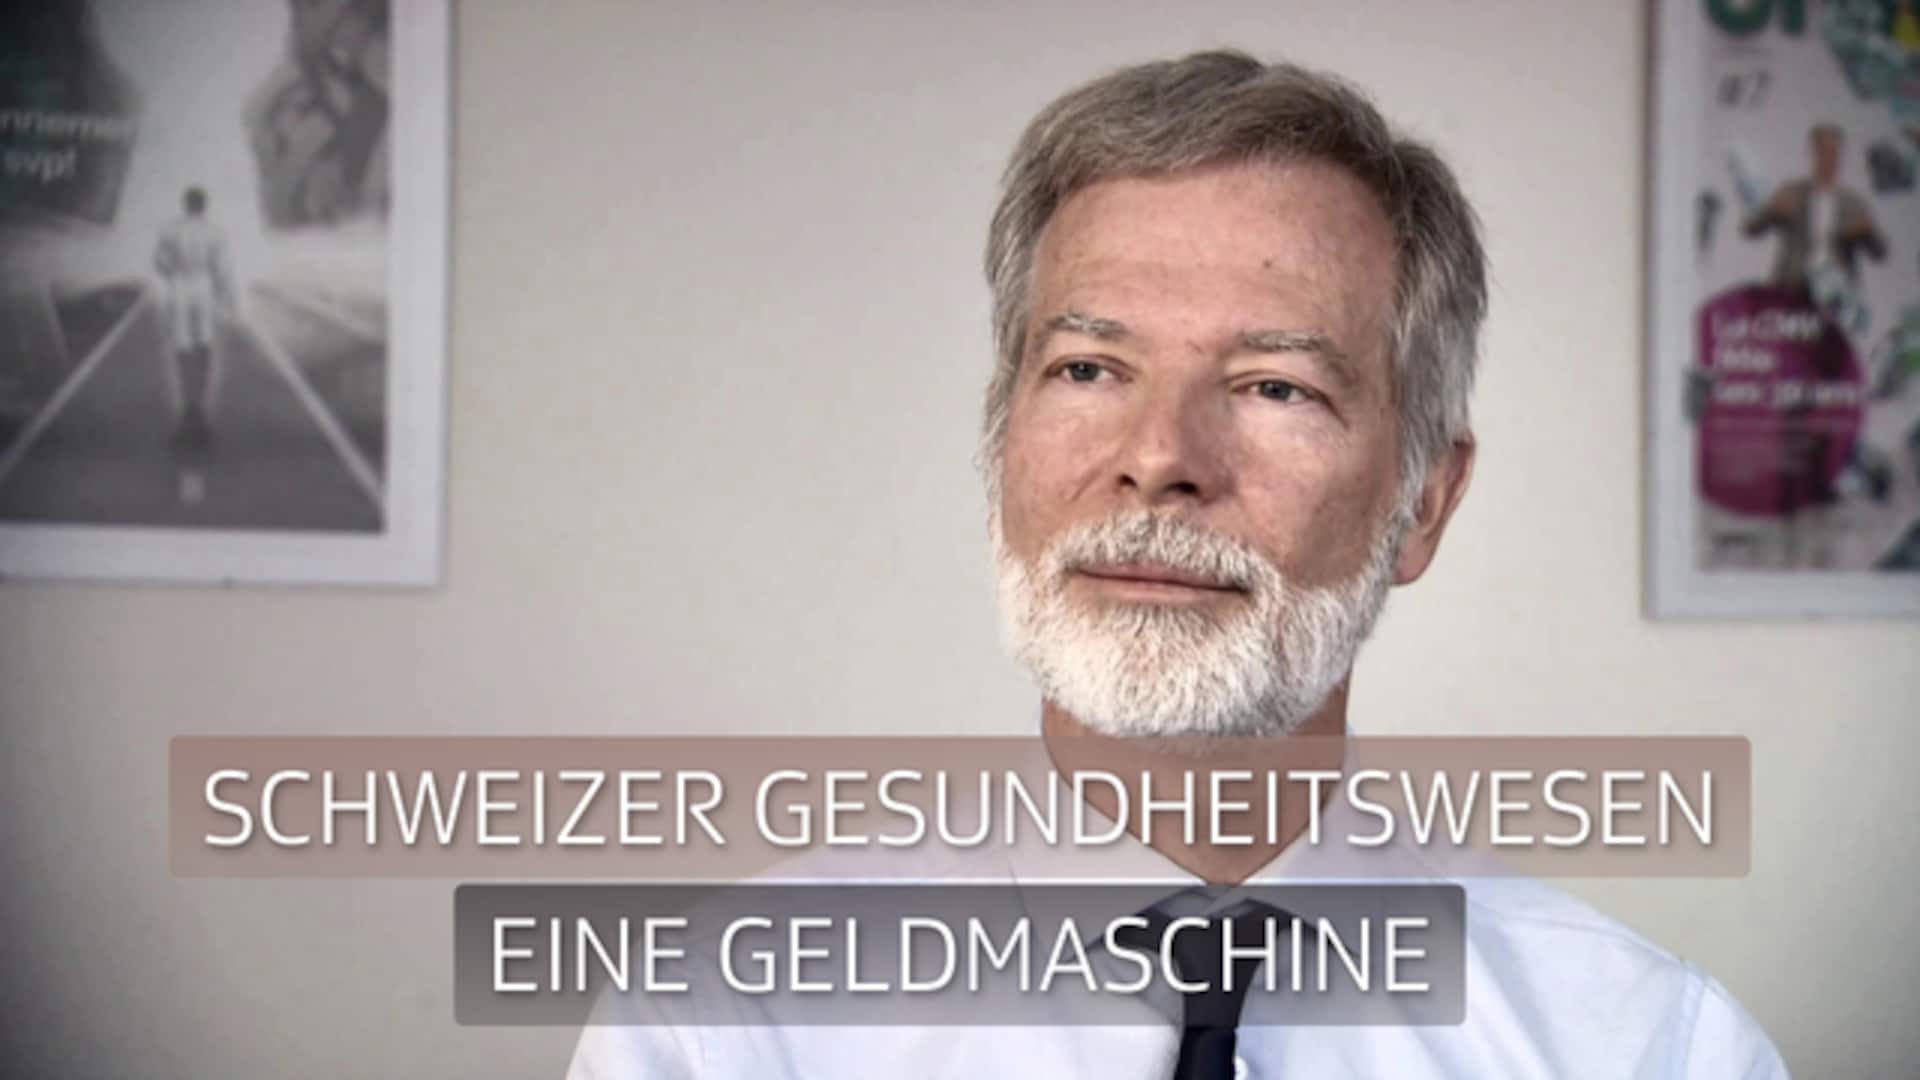 Schweizer Gesundheitswesen - Eine Geldmaschine